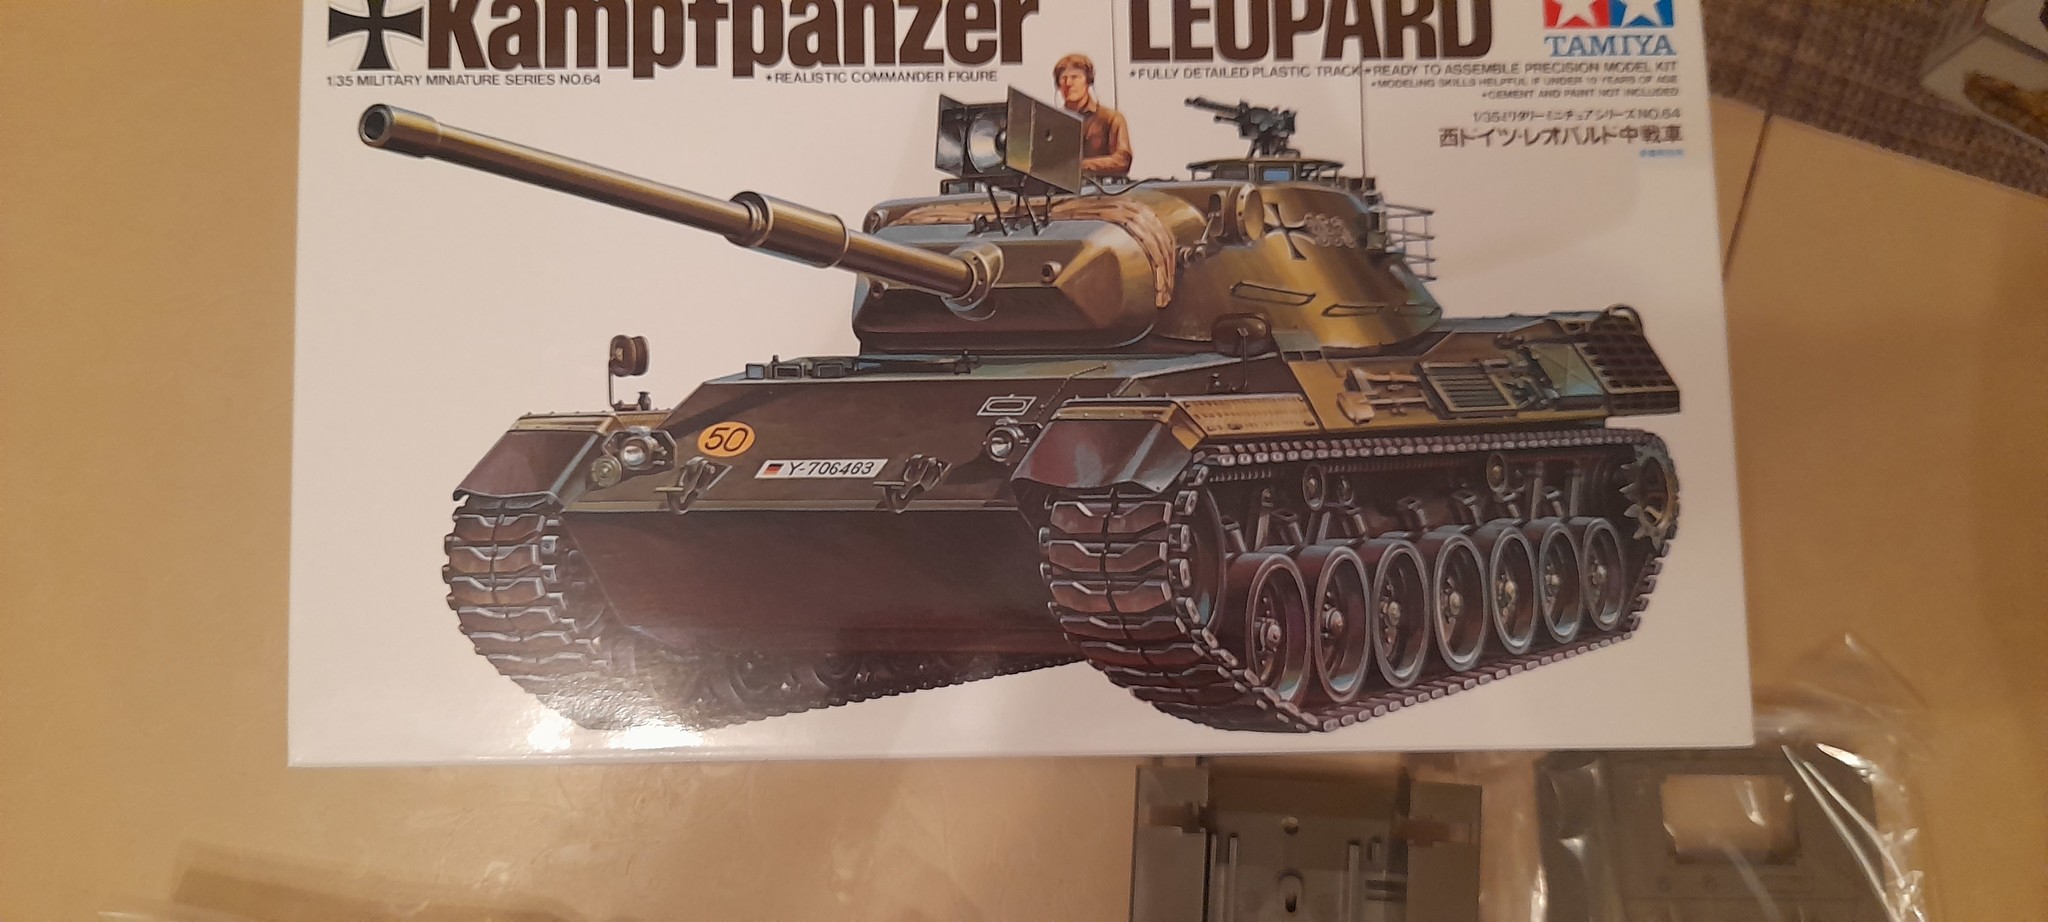 Фото Западно-германский танк Leopard c 105мм. пушкой и 1фигурой